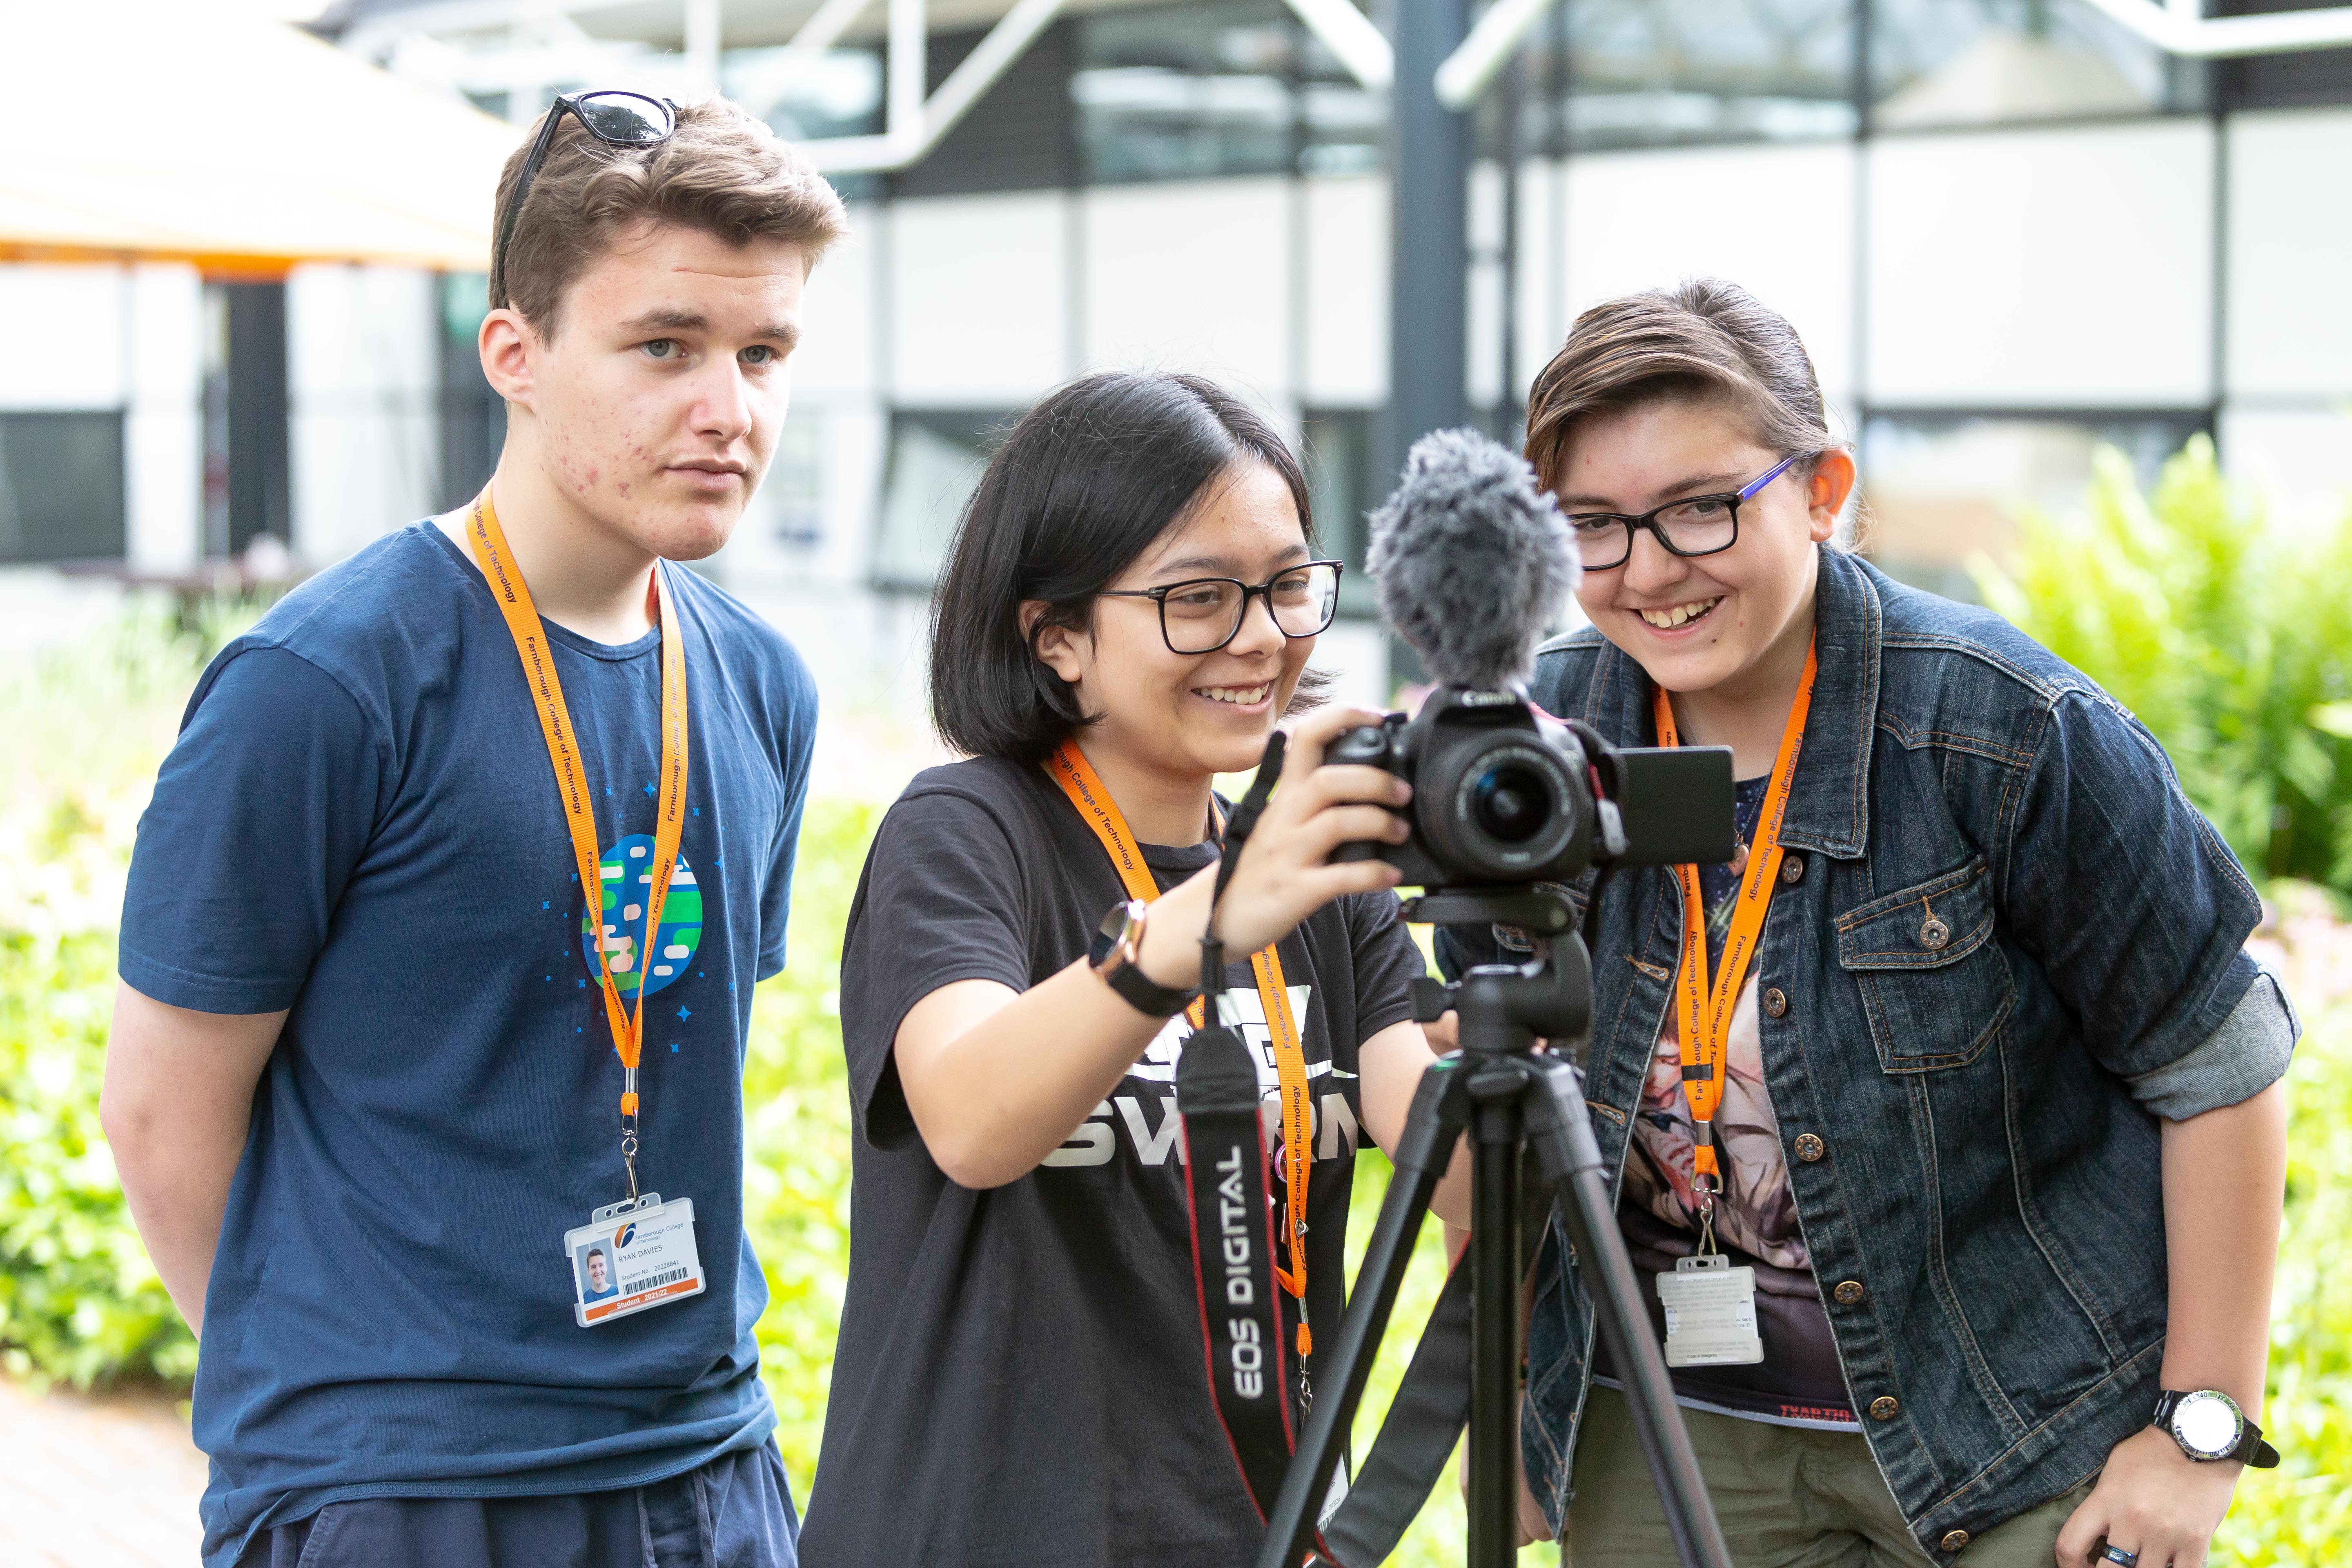 Media students using cameras